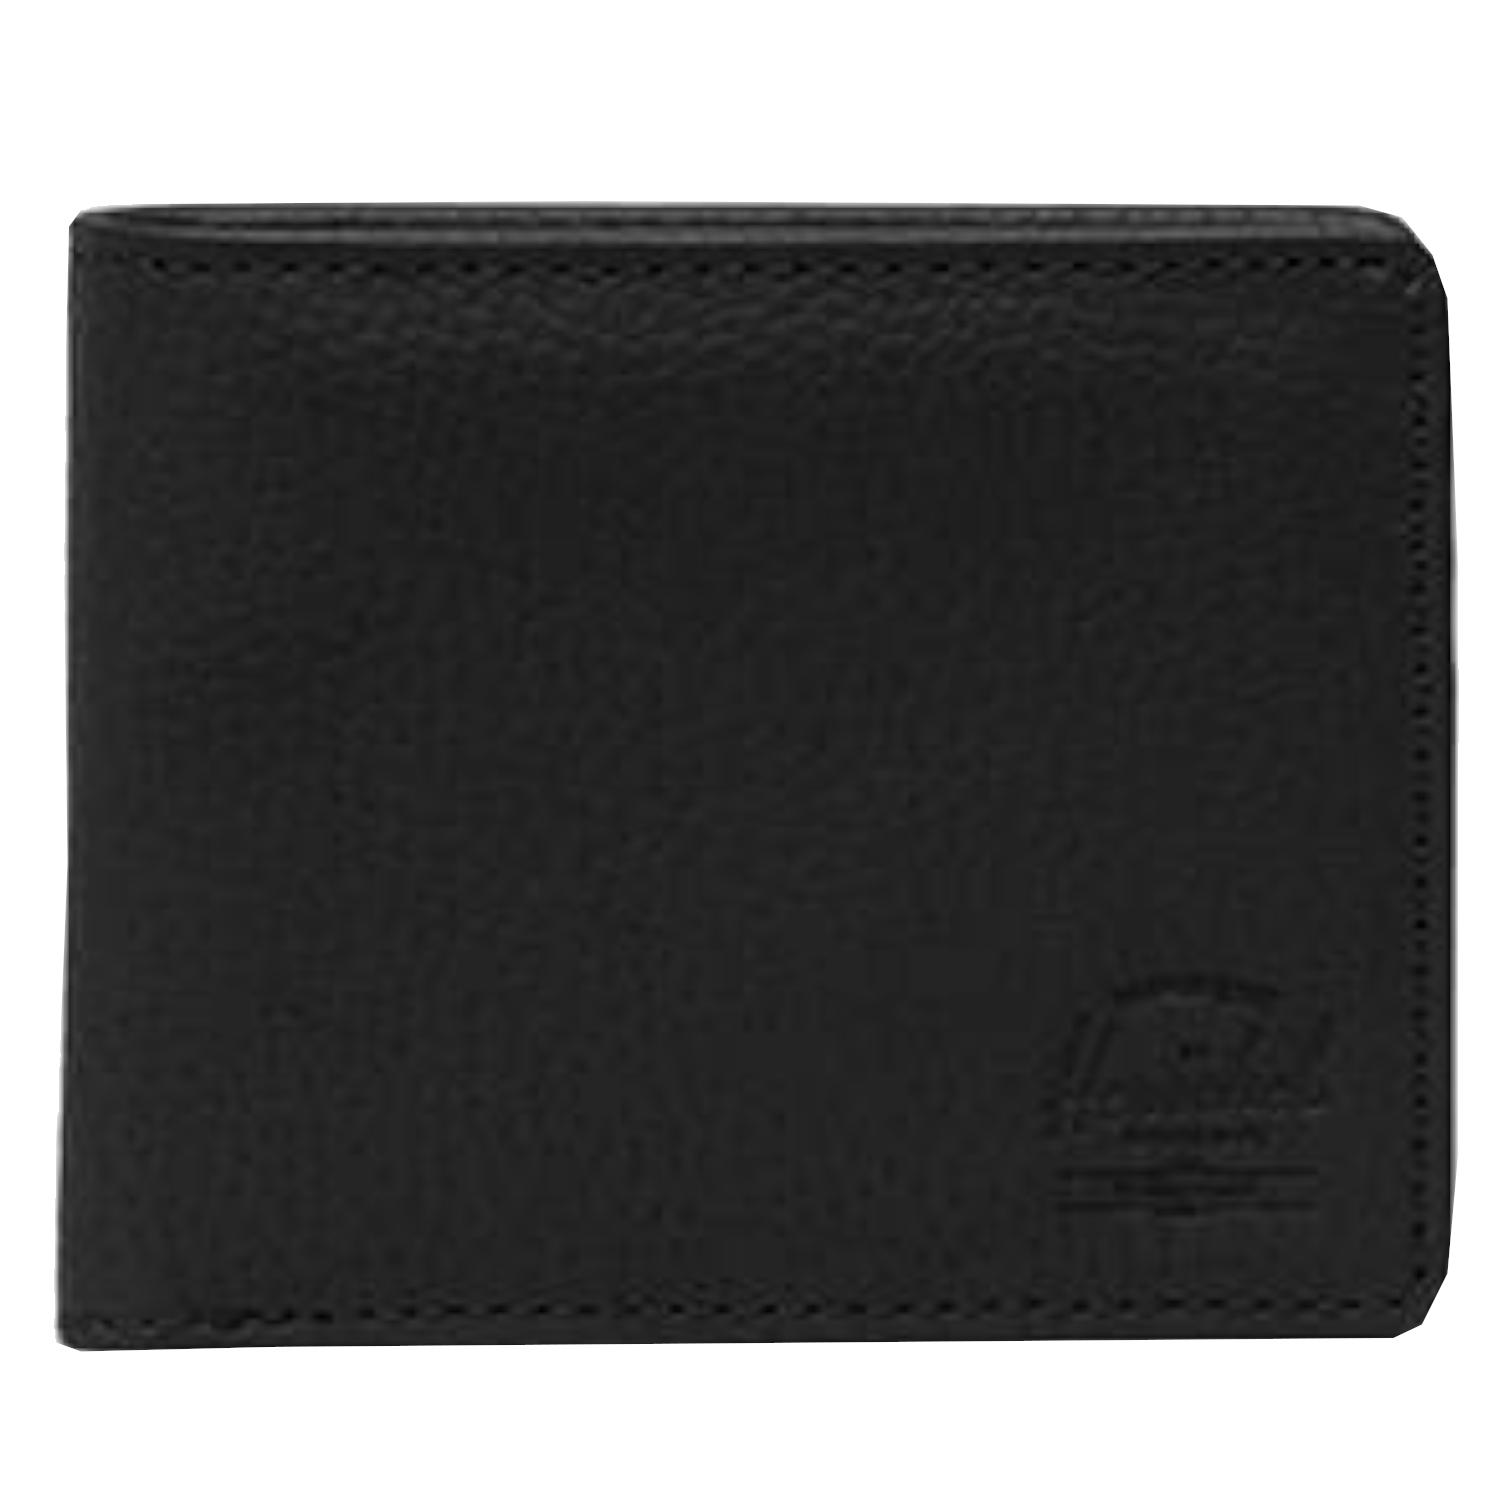 Herschel Roy RFID portemonnee, unisex zwarte portemonnee